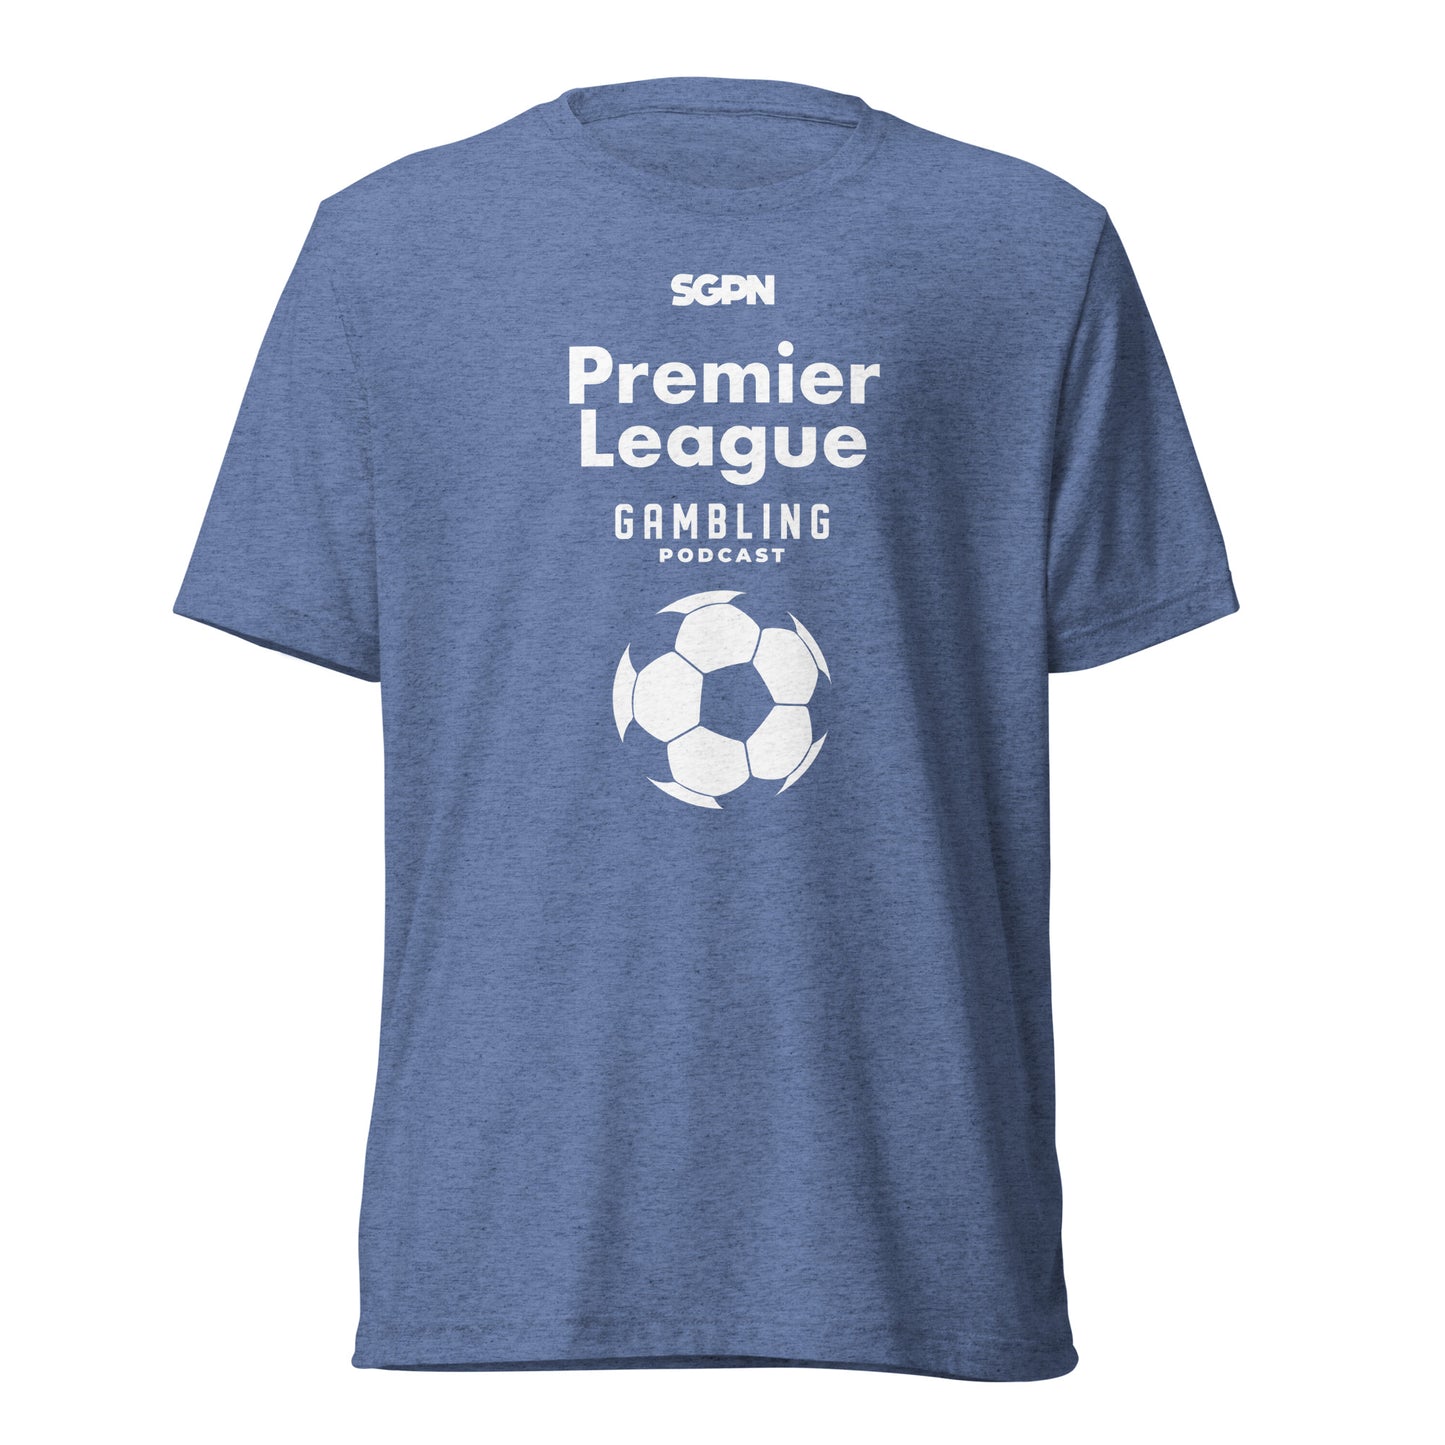 Premier League Gambling Podcast - Short sleeve t-shirt (White Logo)